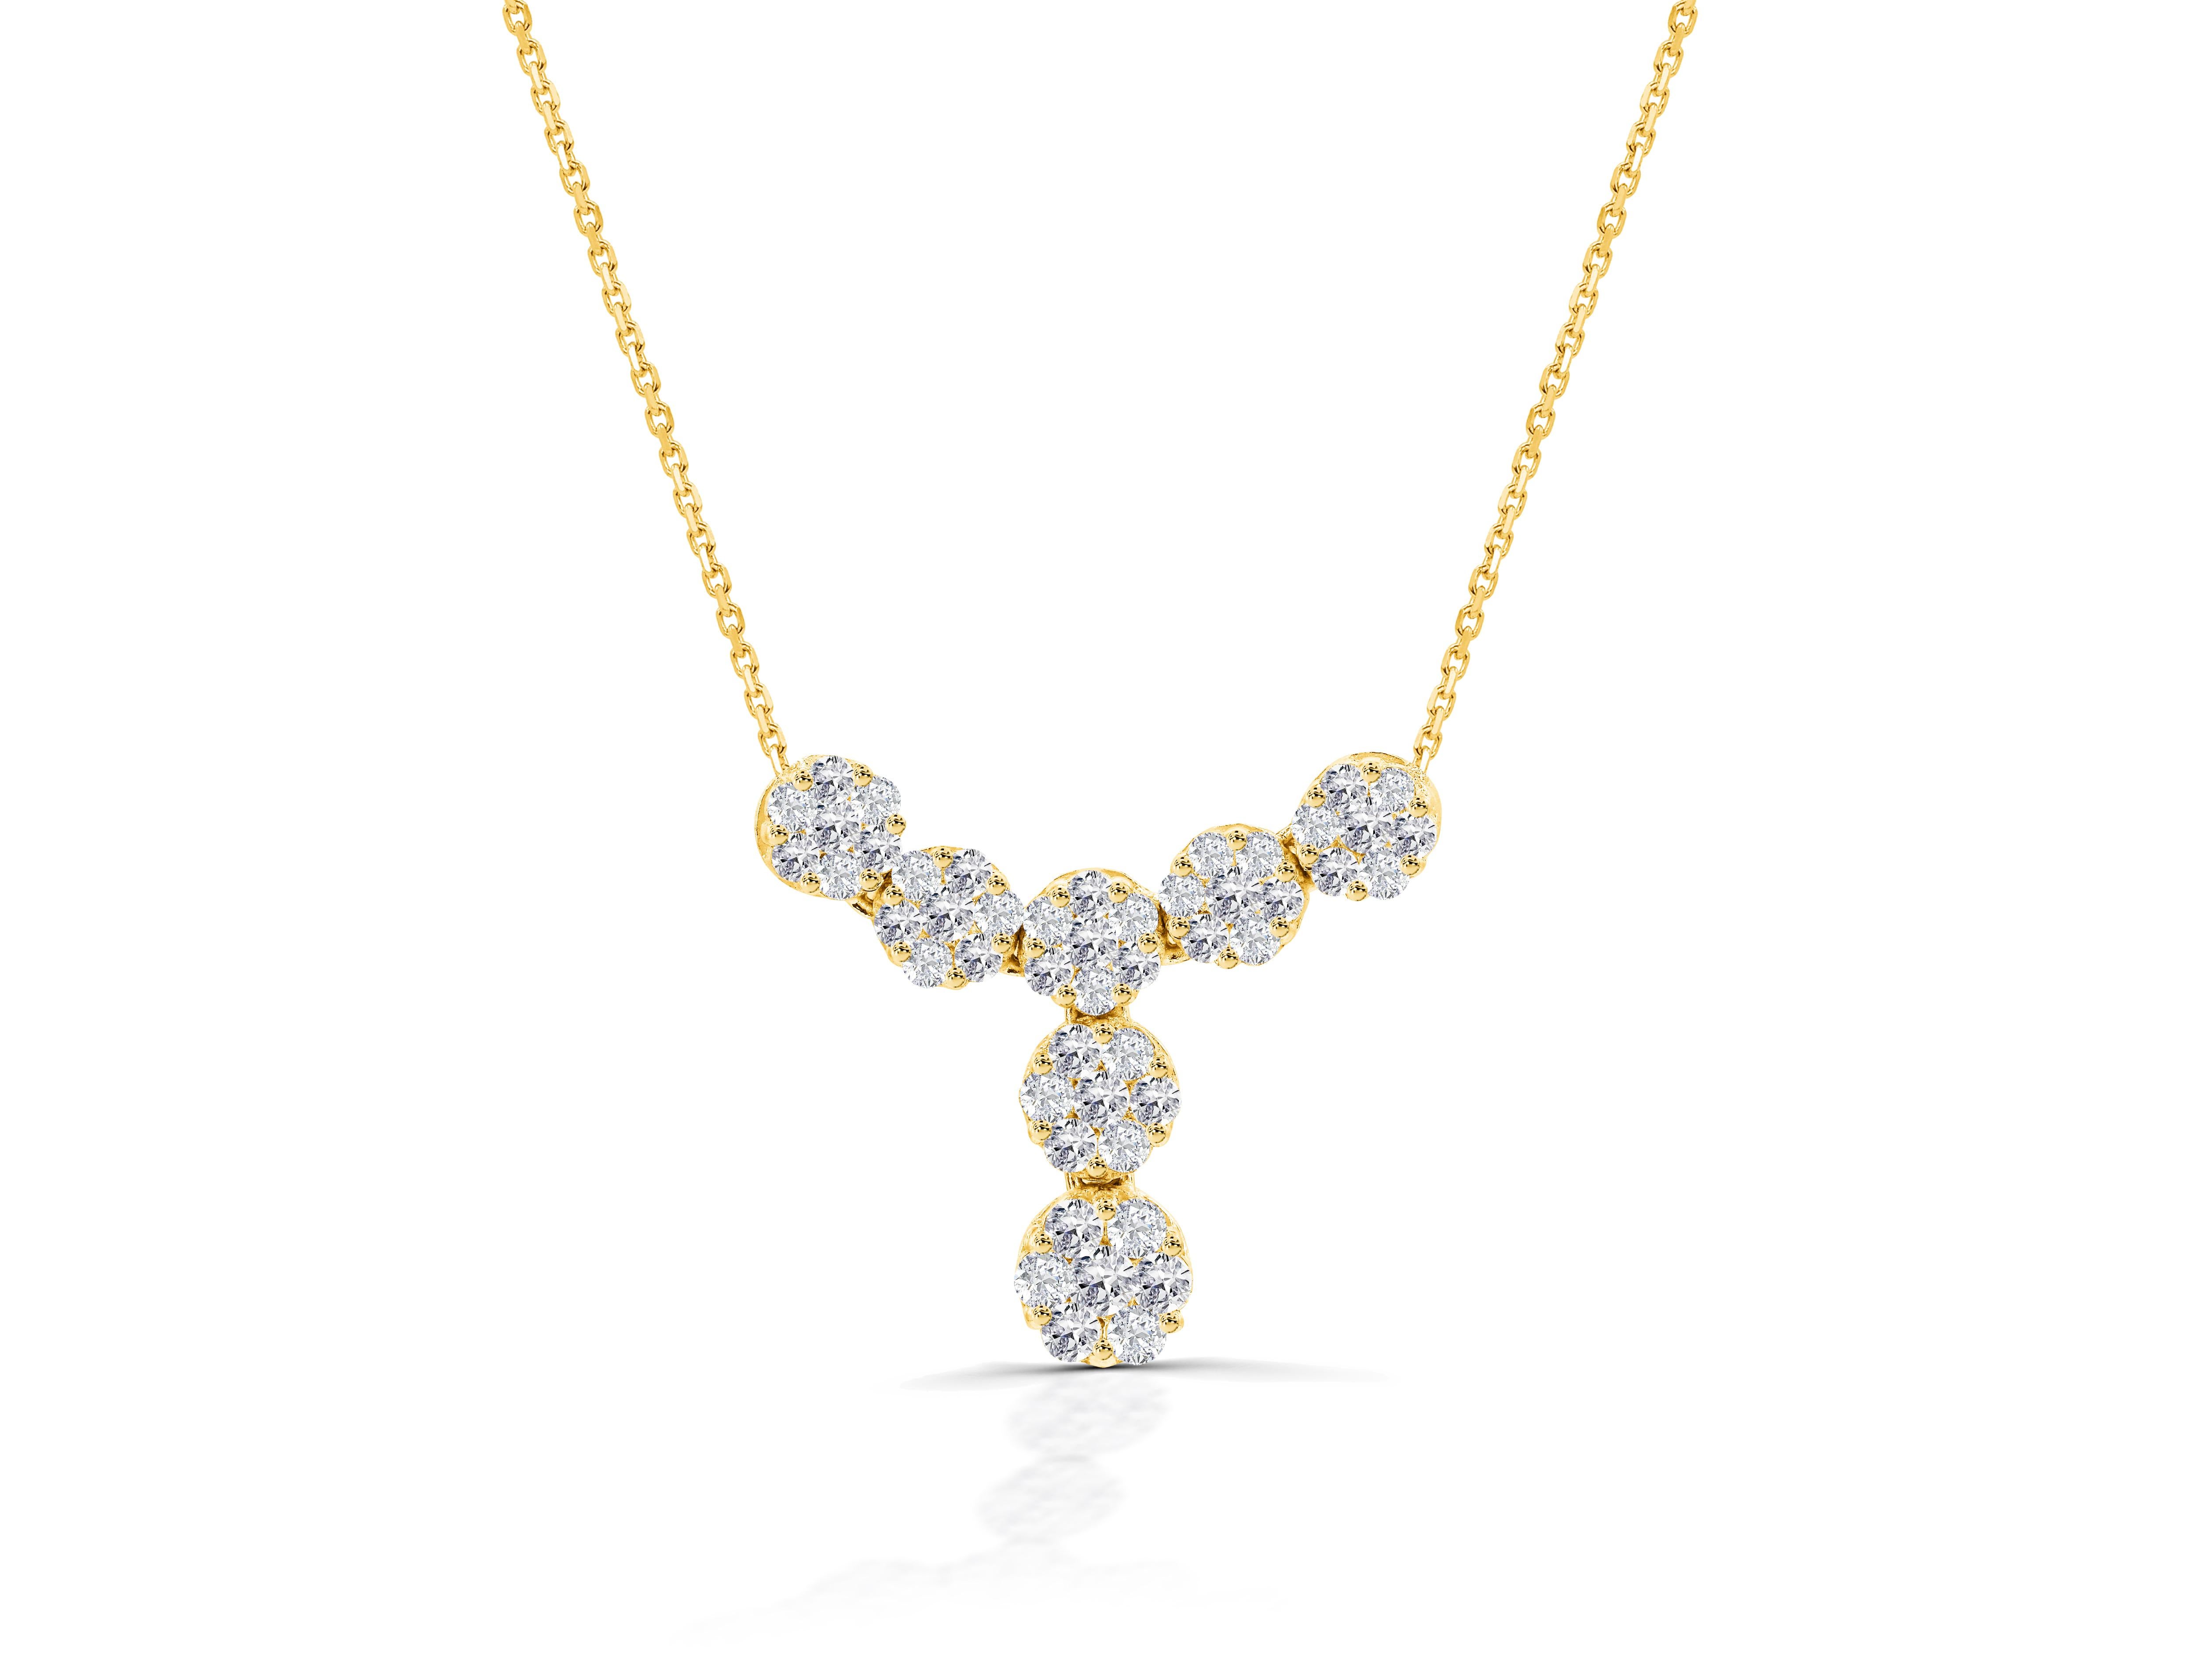 wedding diamond necklace importer -china -china -forum -blog -wikipedia -.cn -.gov -alibaba